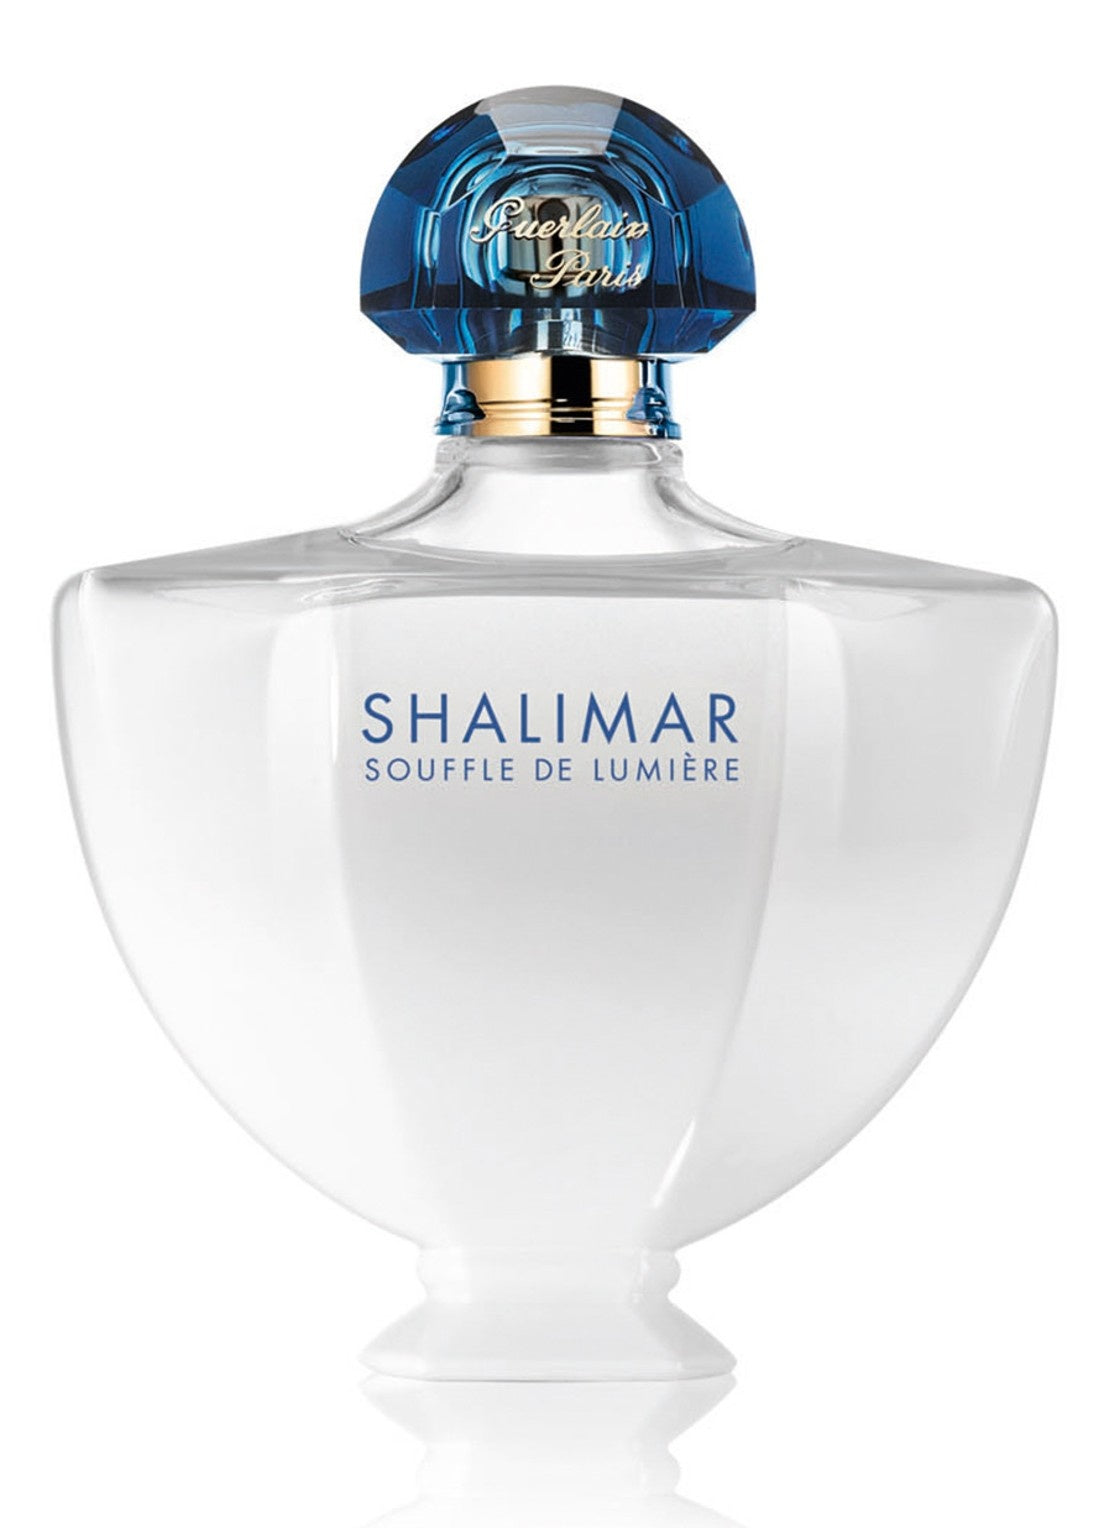 Shalimar Souffle de Lumière Eau de Parfum